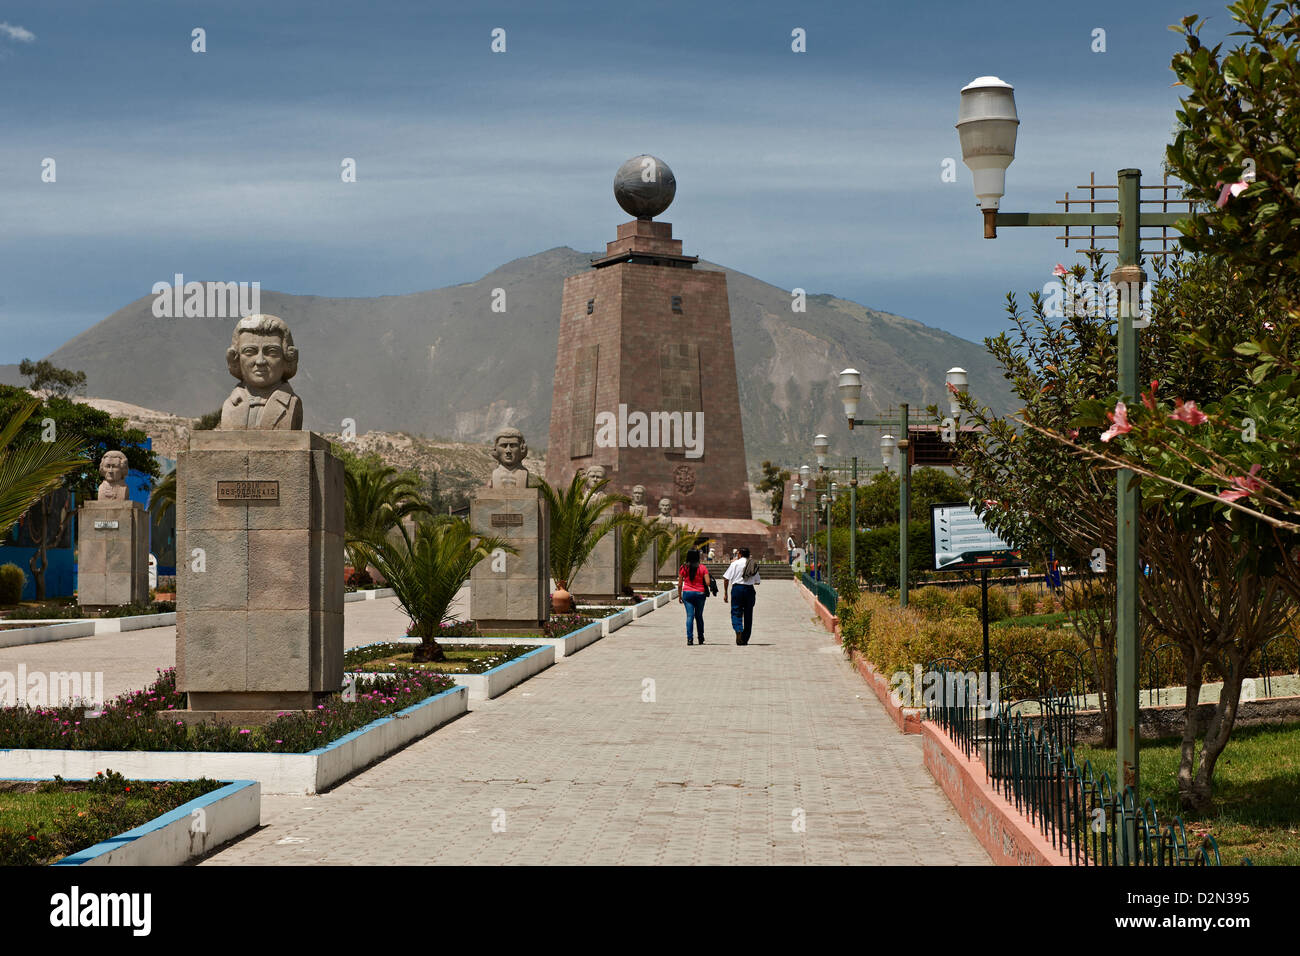 Mitad del Mundo oder in der Mitte der Erde, Quito, Ecuador, Südamerika Stockfoto